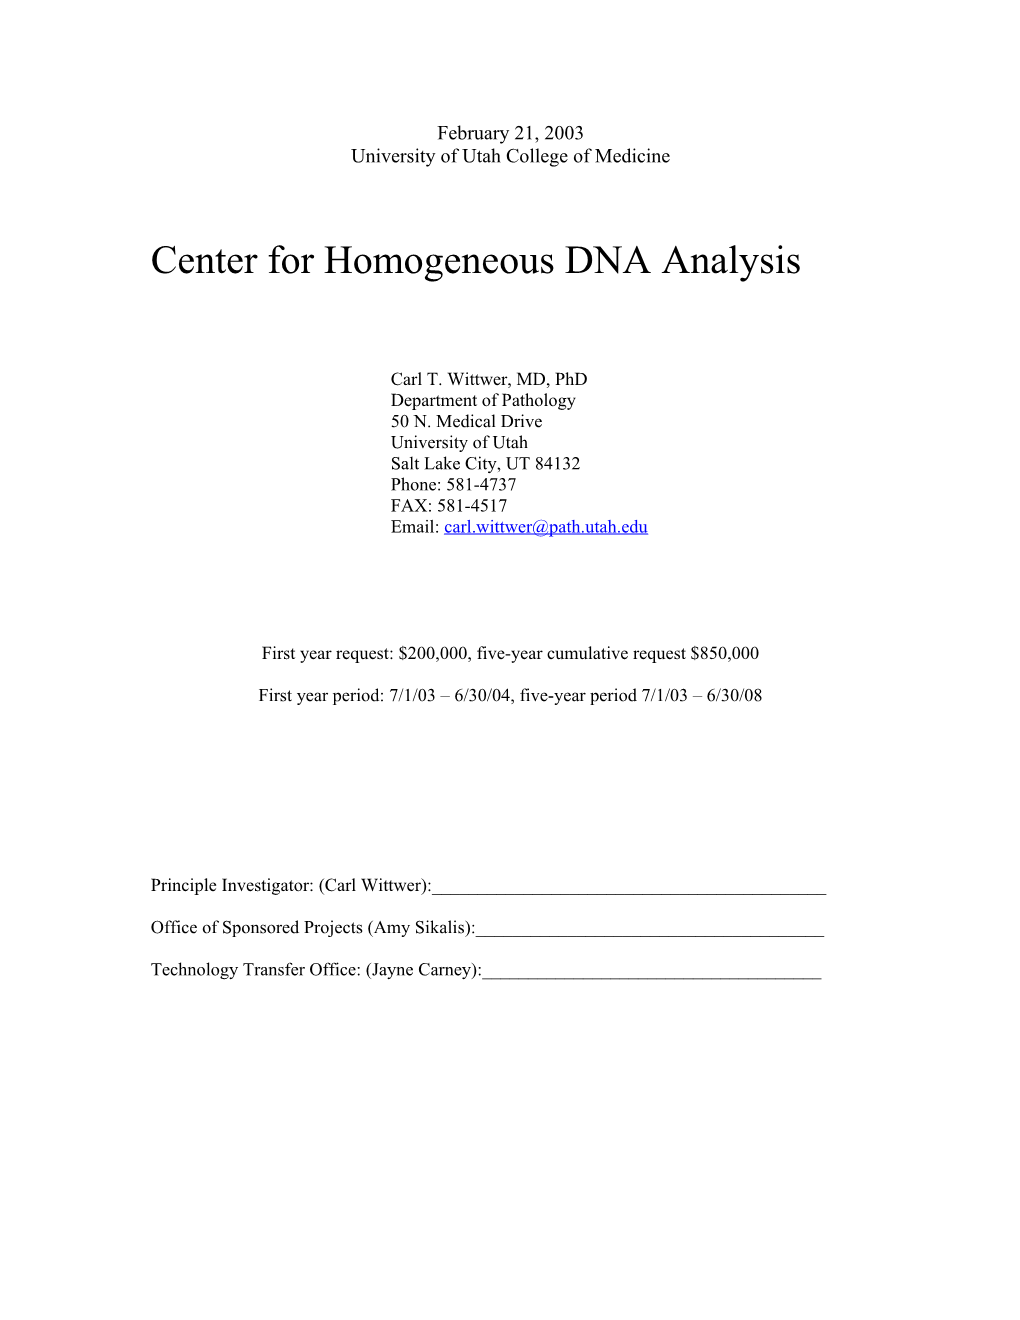 Center for Homogeneous DNA Analysis